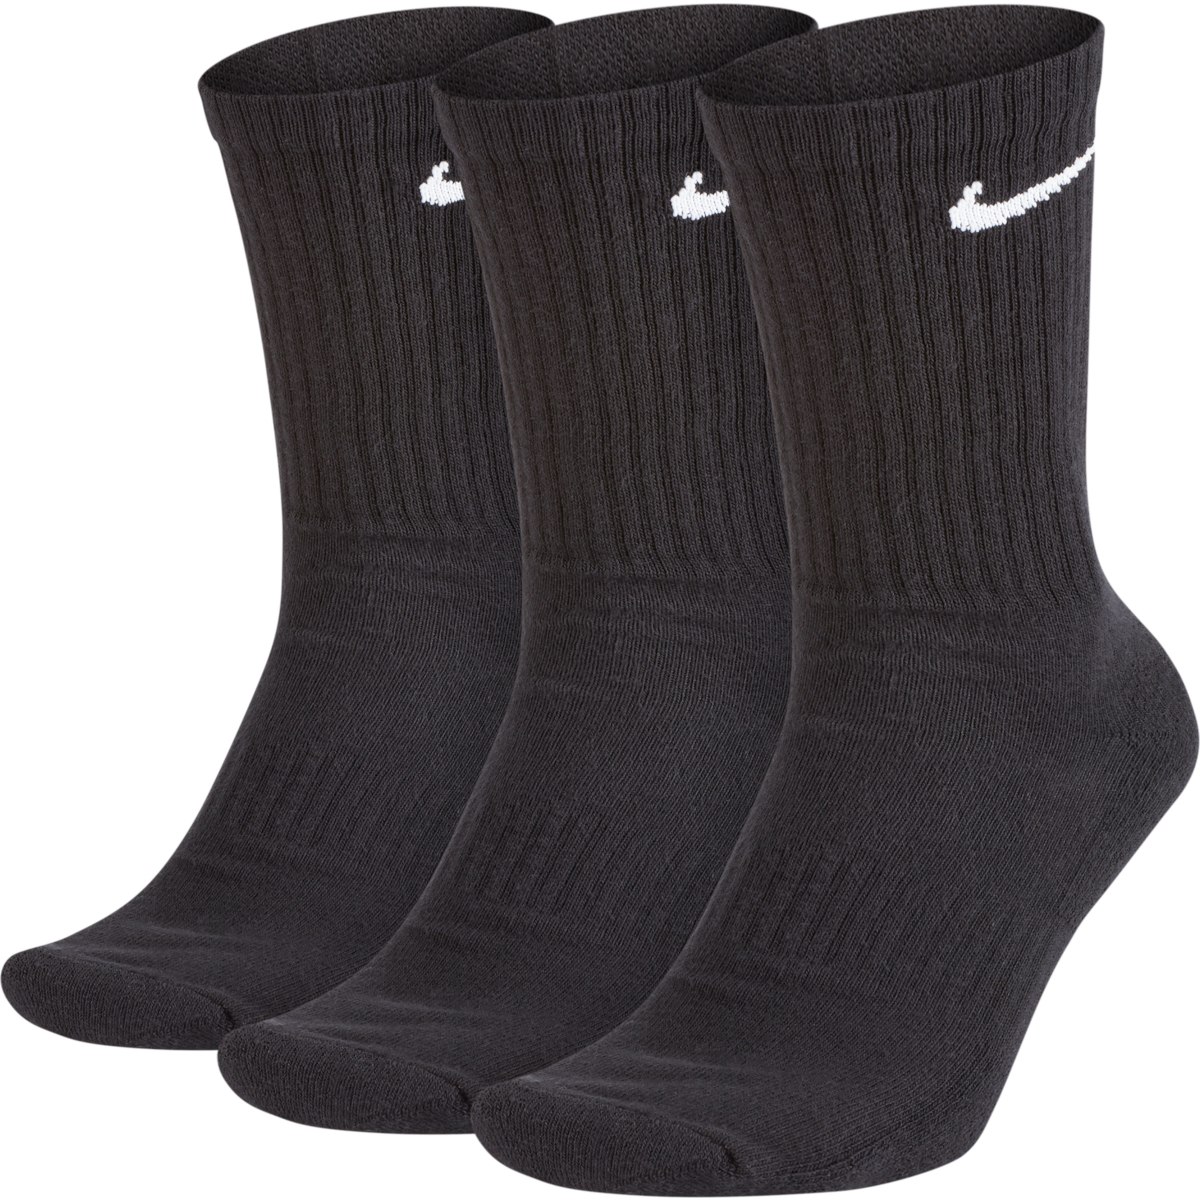 Image of Nike Everyday Cushion Crew Training Socks (3 Pair) - black/white SX7664-010